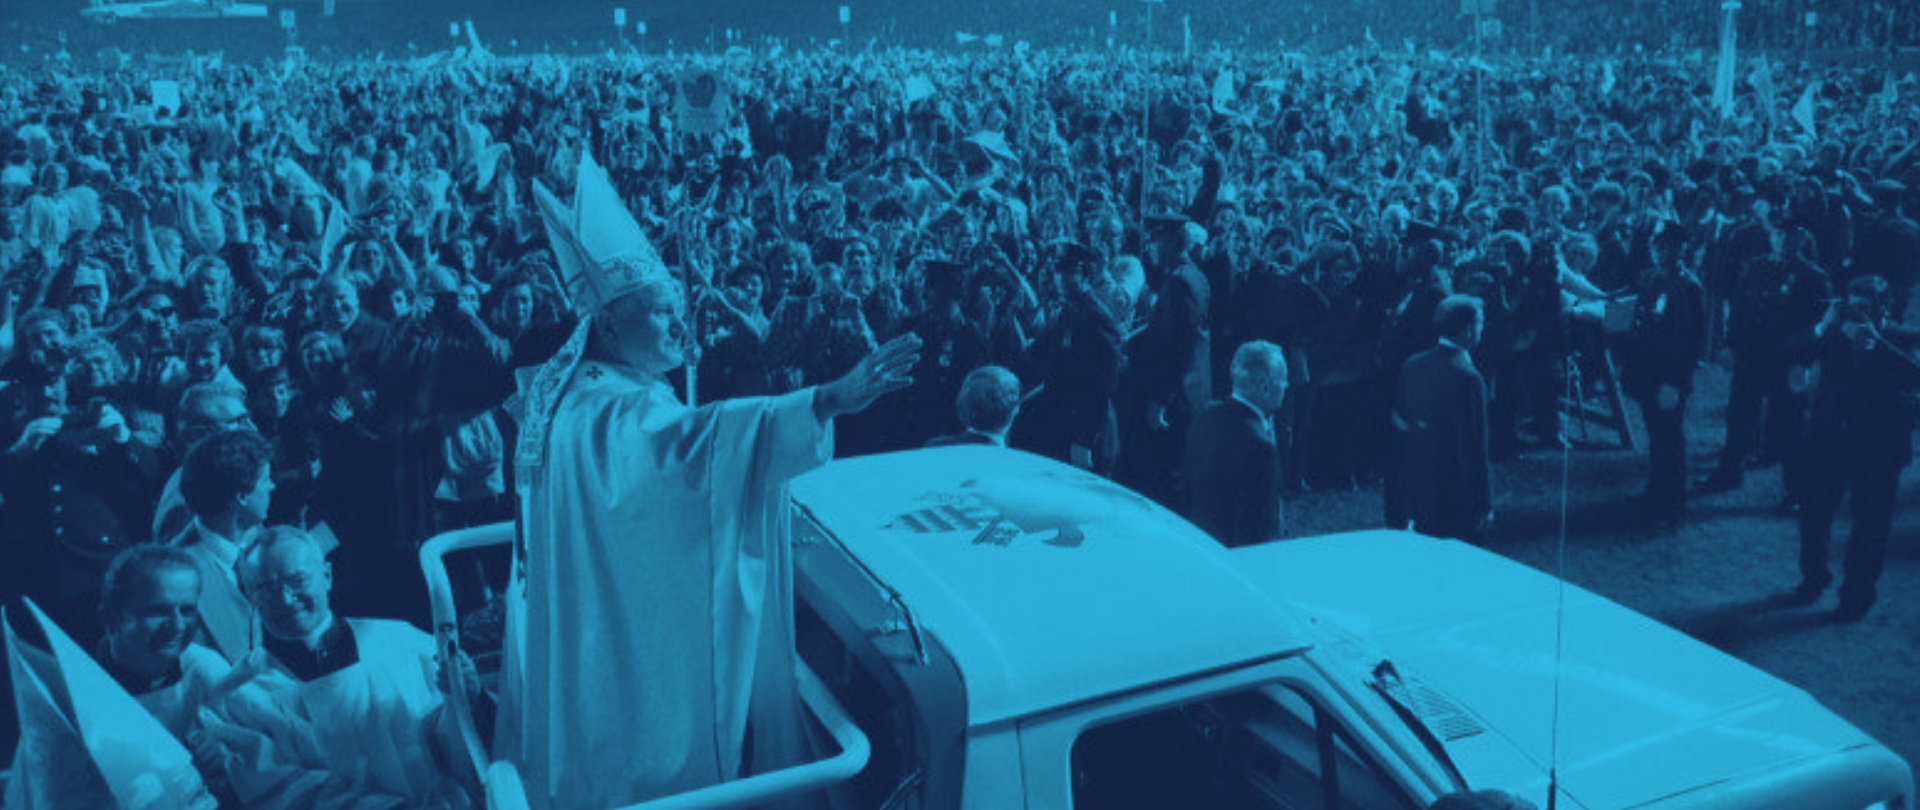 Zdjęcie przedstawia papieża Jana Pawła II jadącego otwartym papa mobile. Mężczyzna jest odziany w odświętny ornat i mitrę. Prawą ręką uniesioną na wysokości ramienia pozdrawia witający go tłum.